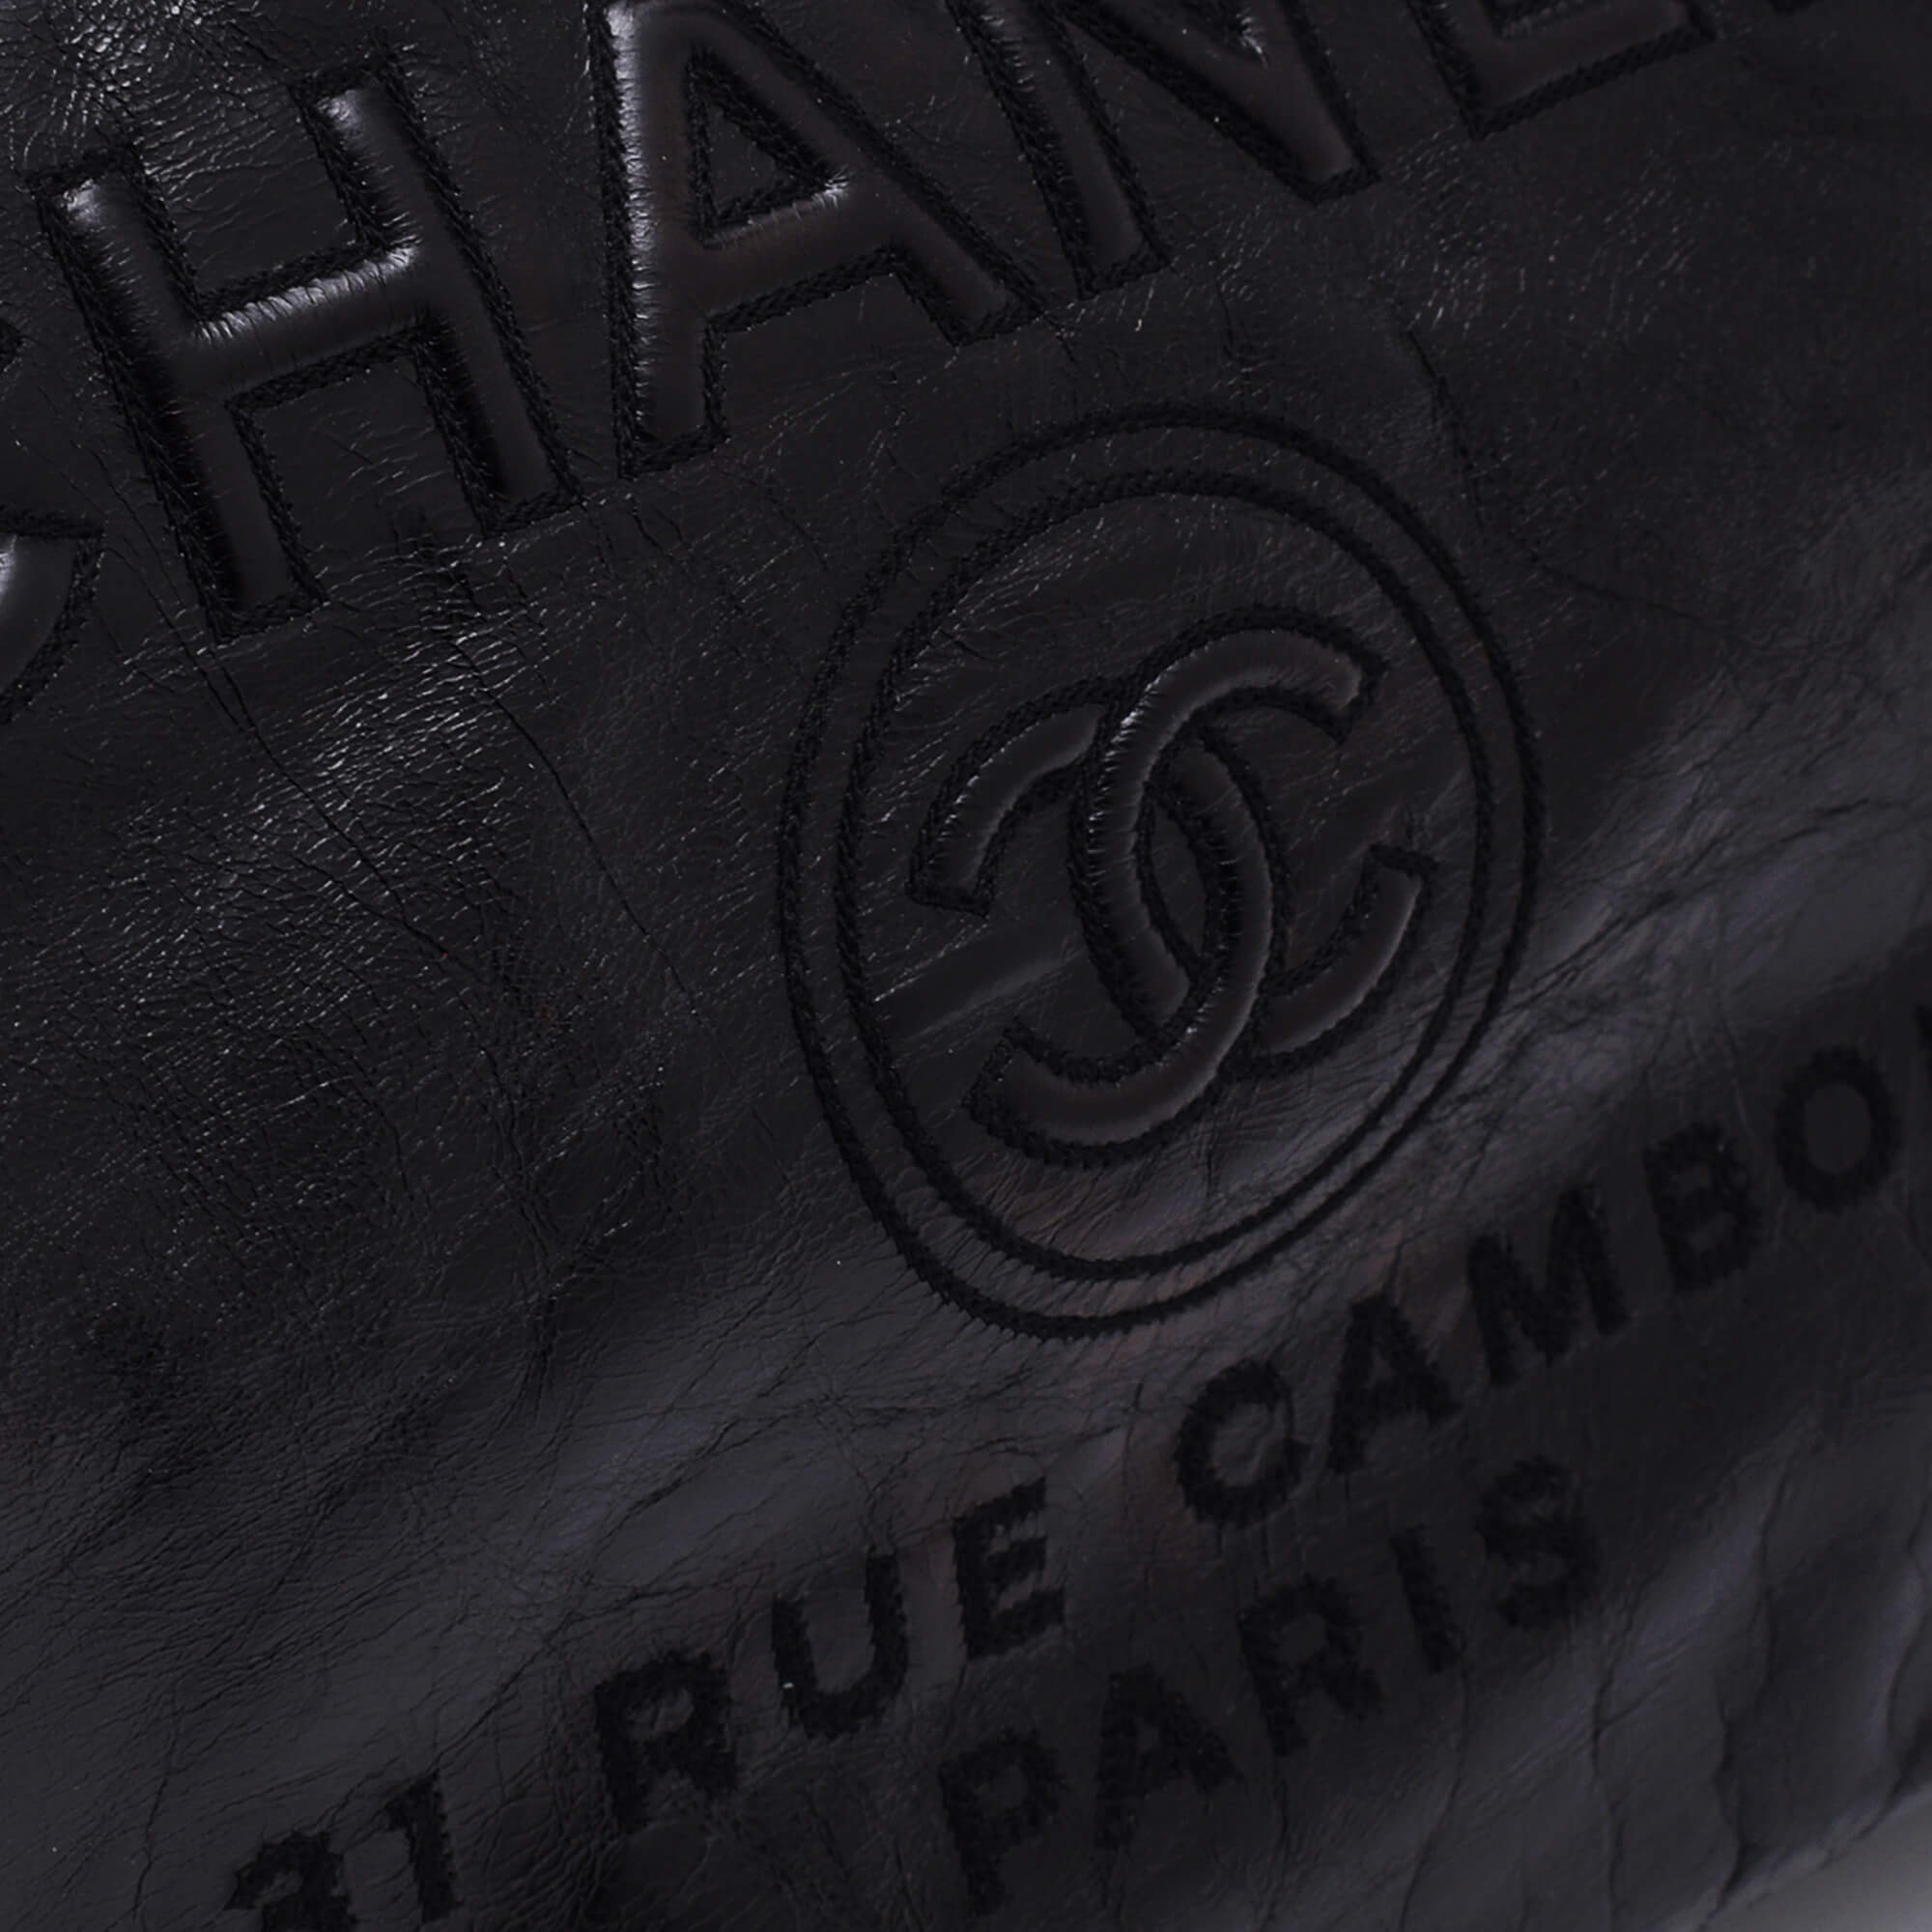 Chanel - Black Glazed Calfskin Leather Large Deauville Bag